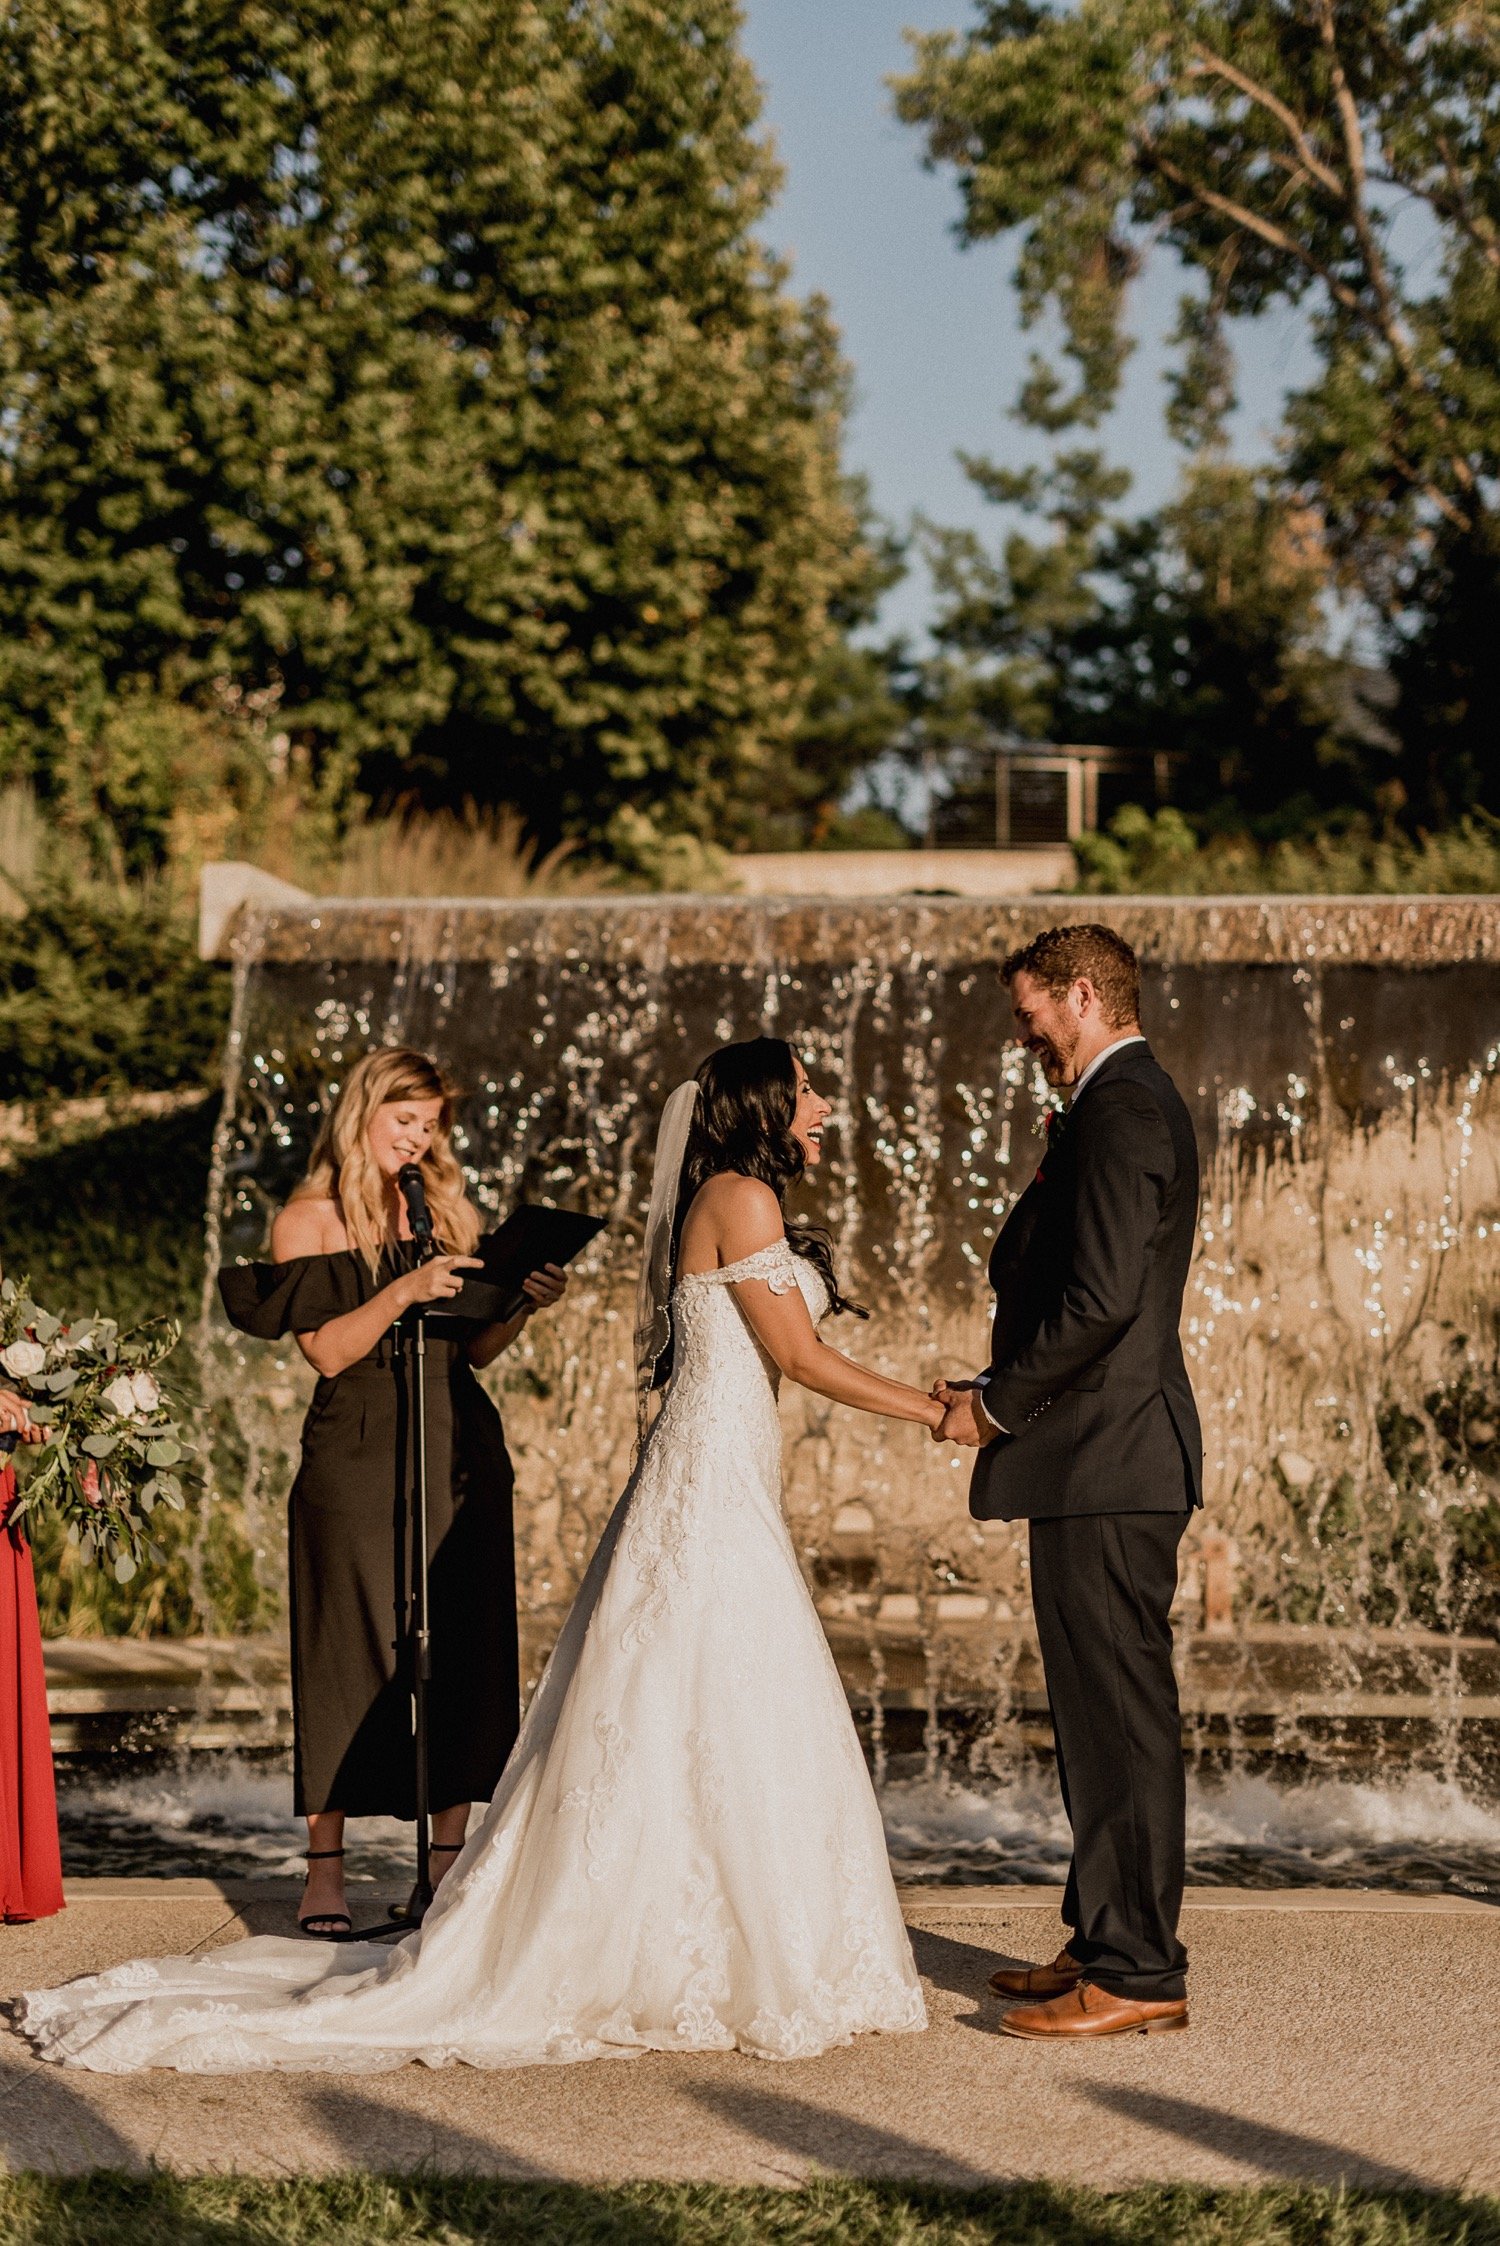 Des-Moines-iowa-botanical-garden-outdoor-wedding-ceremony.jpg.jpg